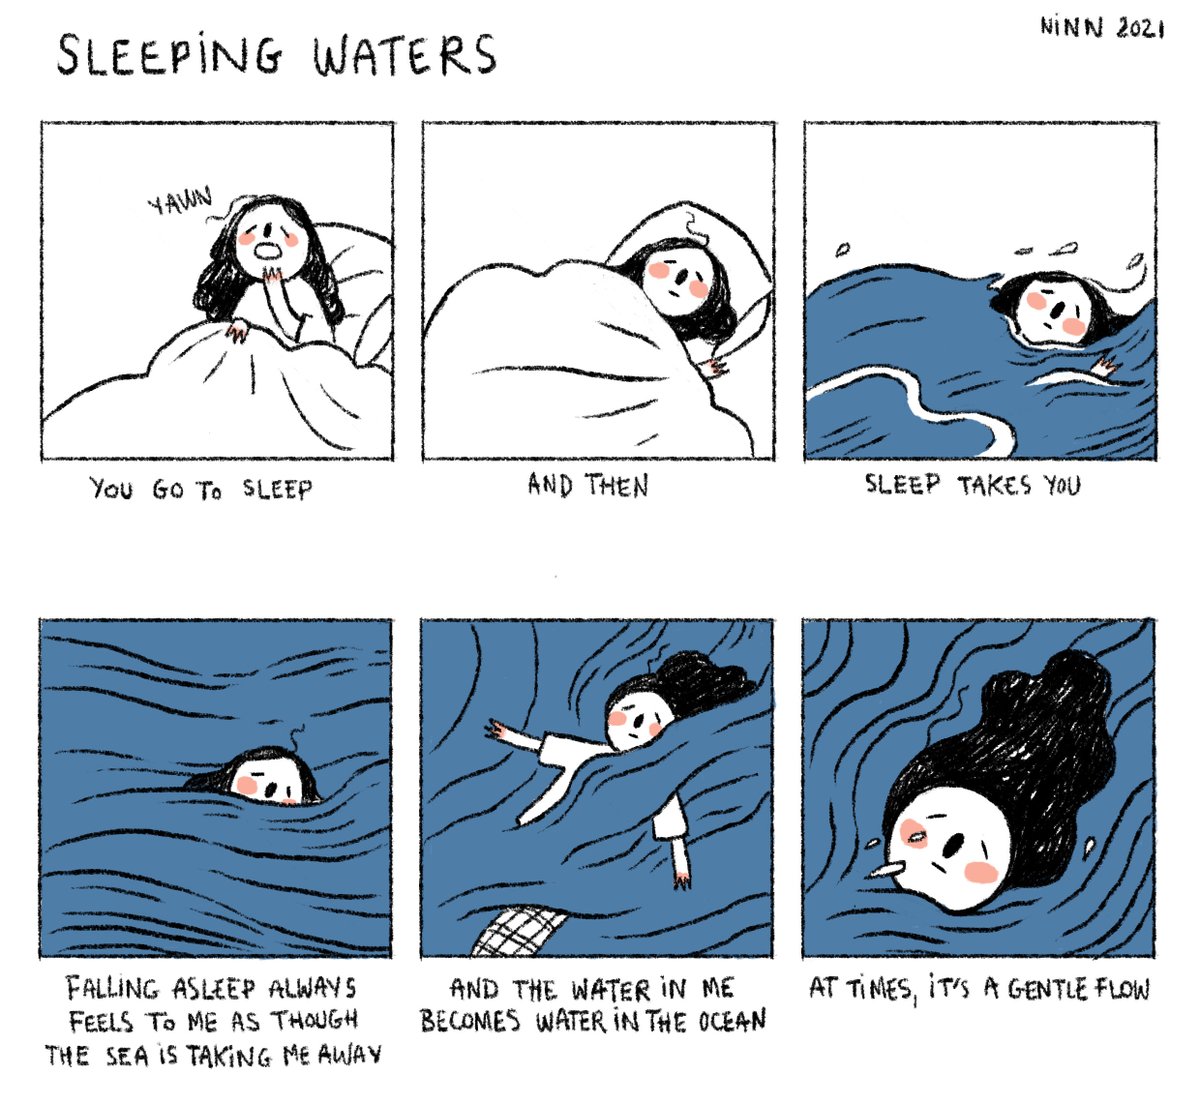 Sleeping waters 